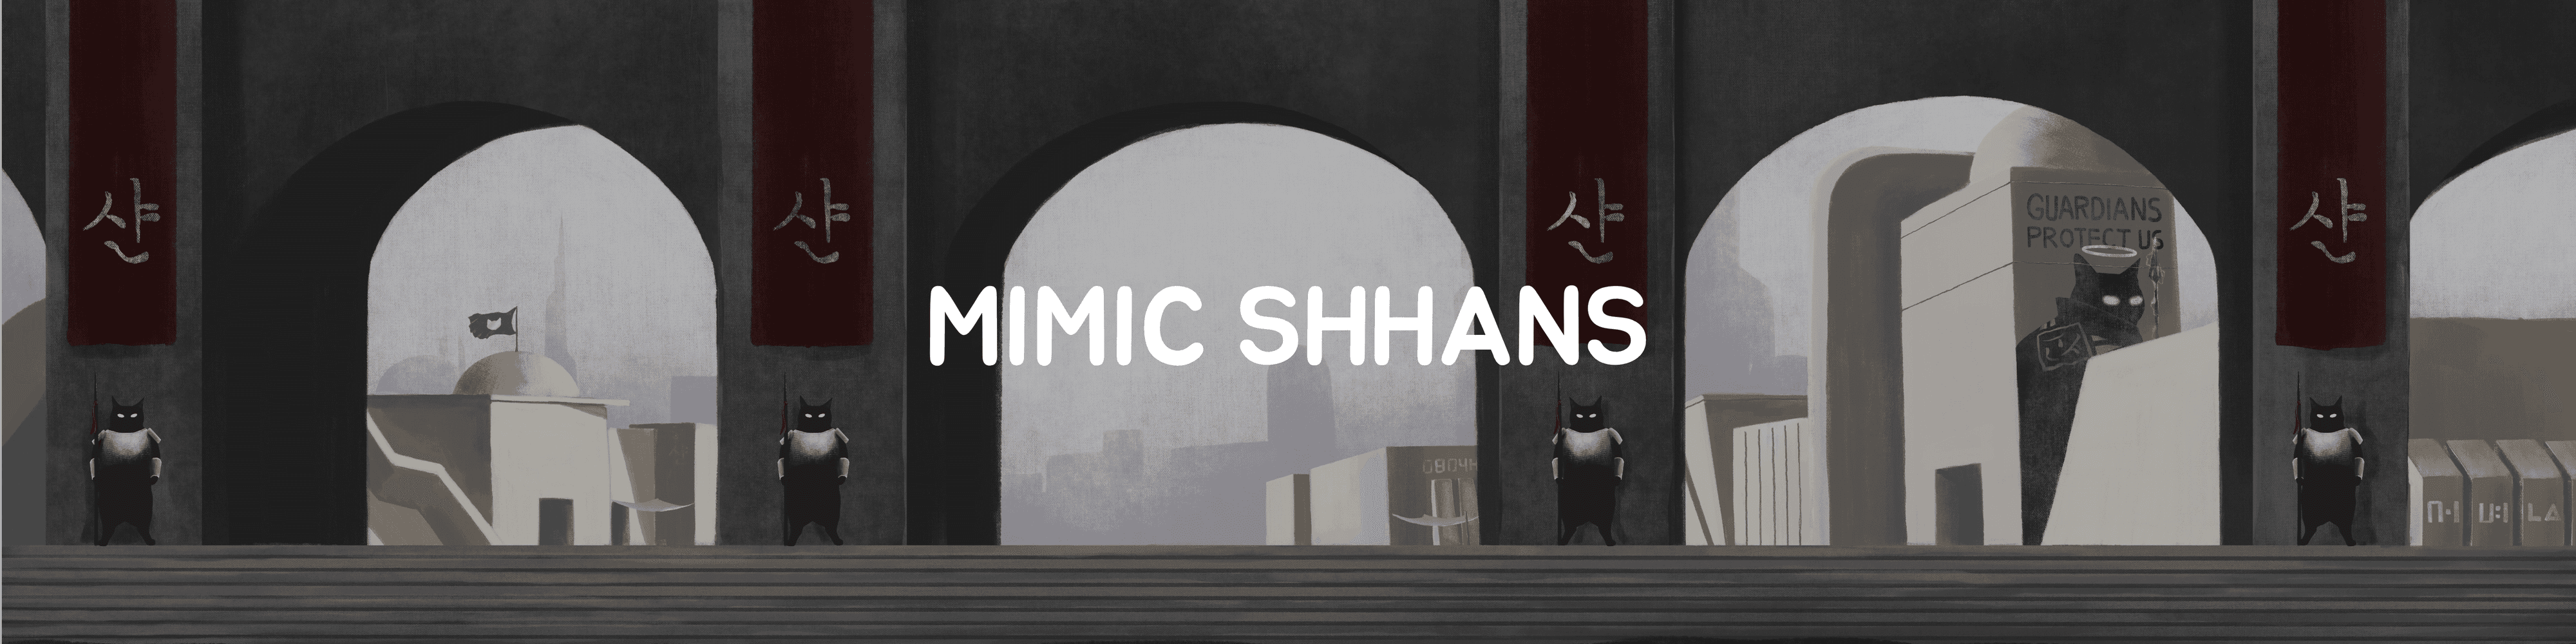 Mimic Shhans - THE SHHAN